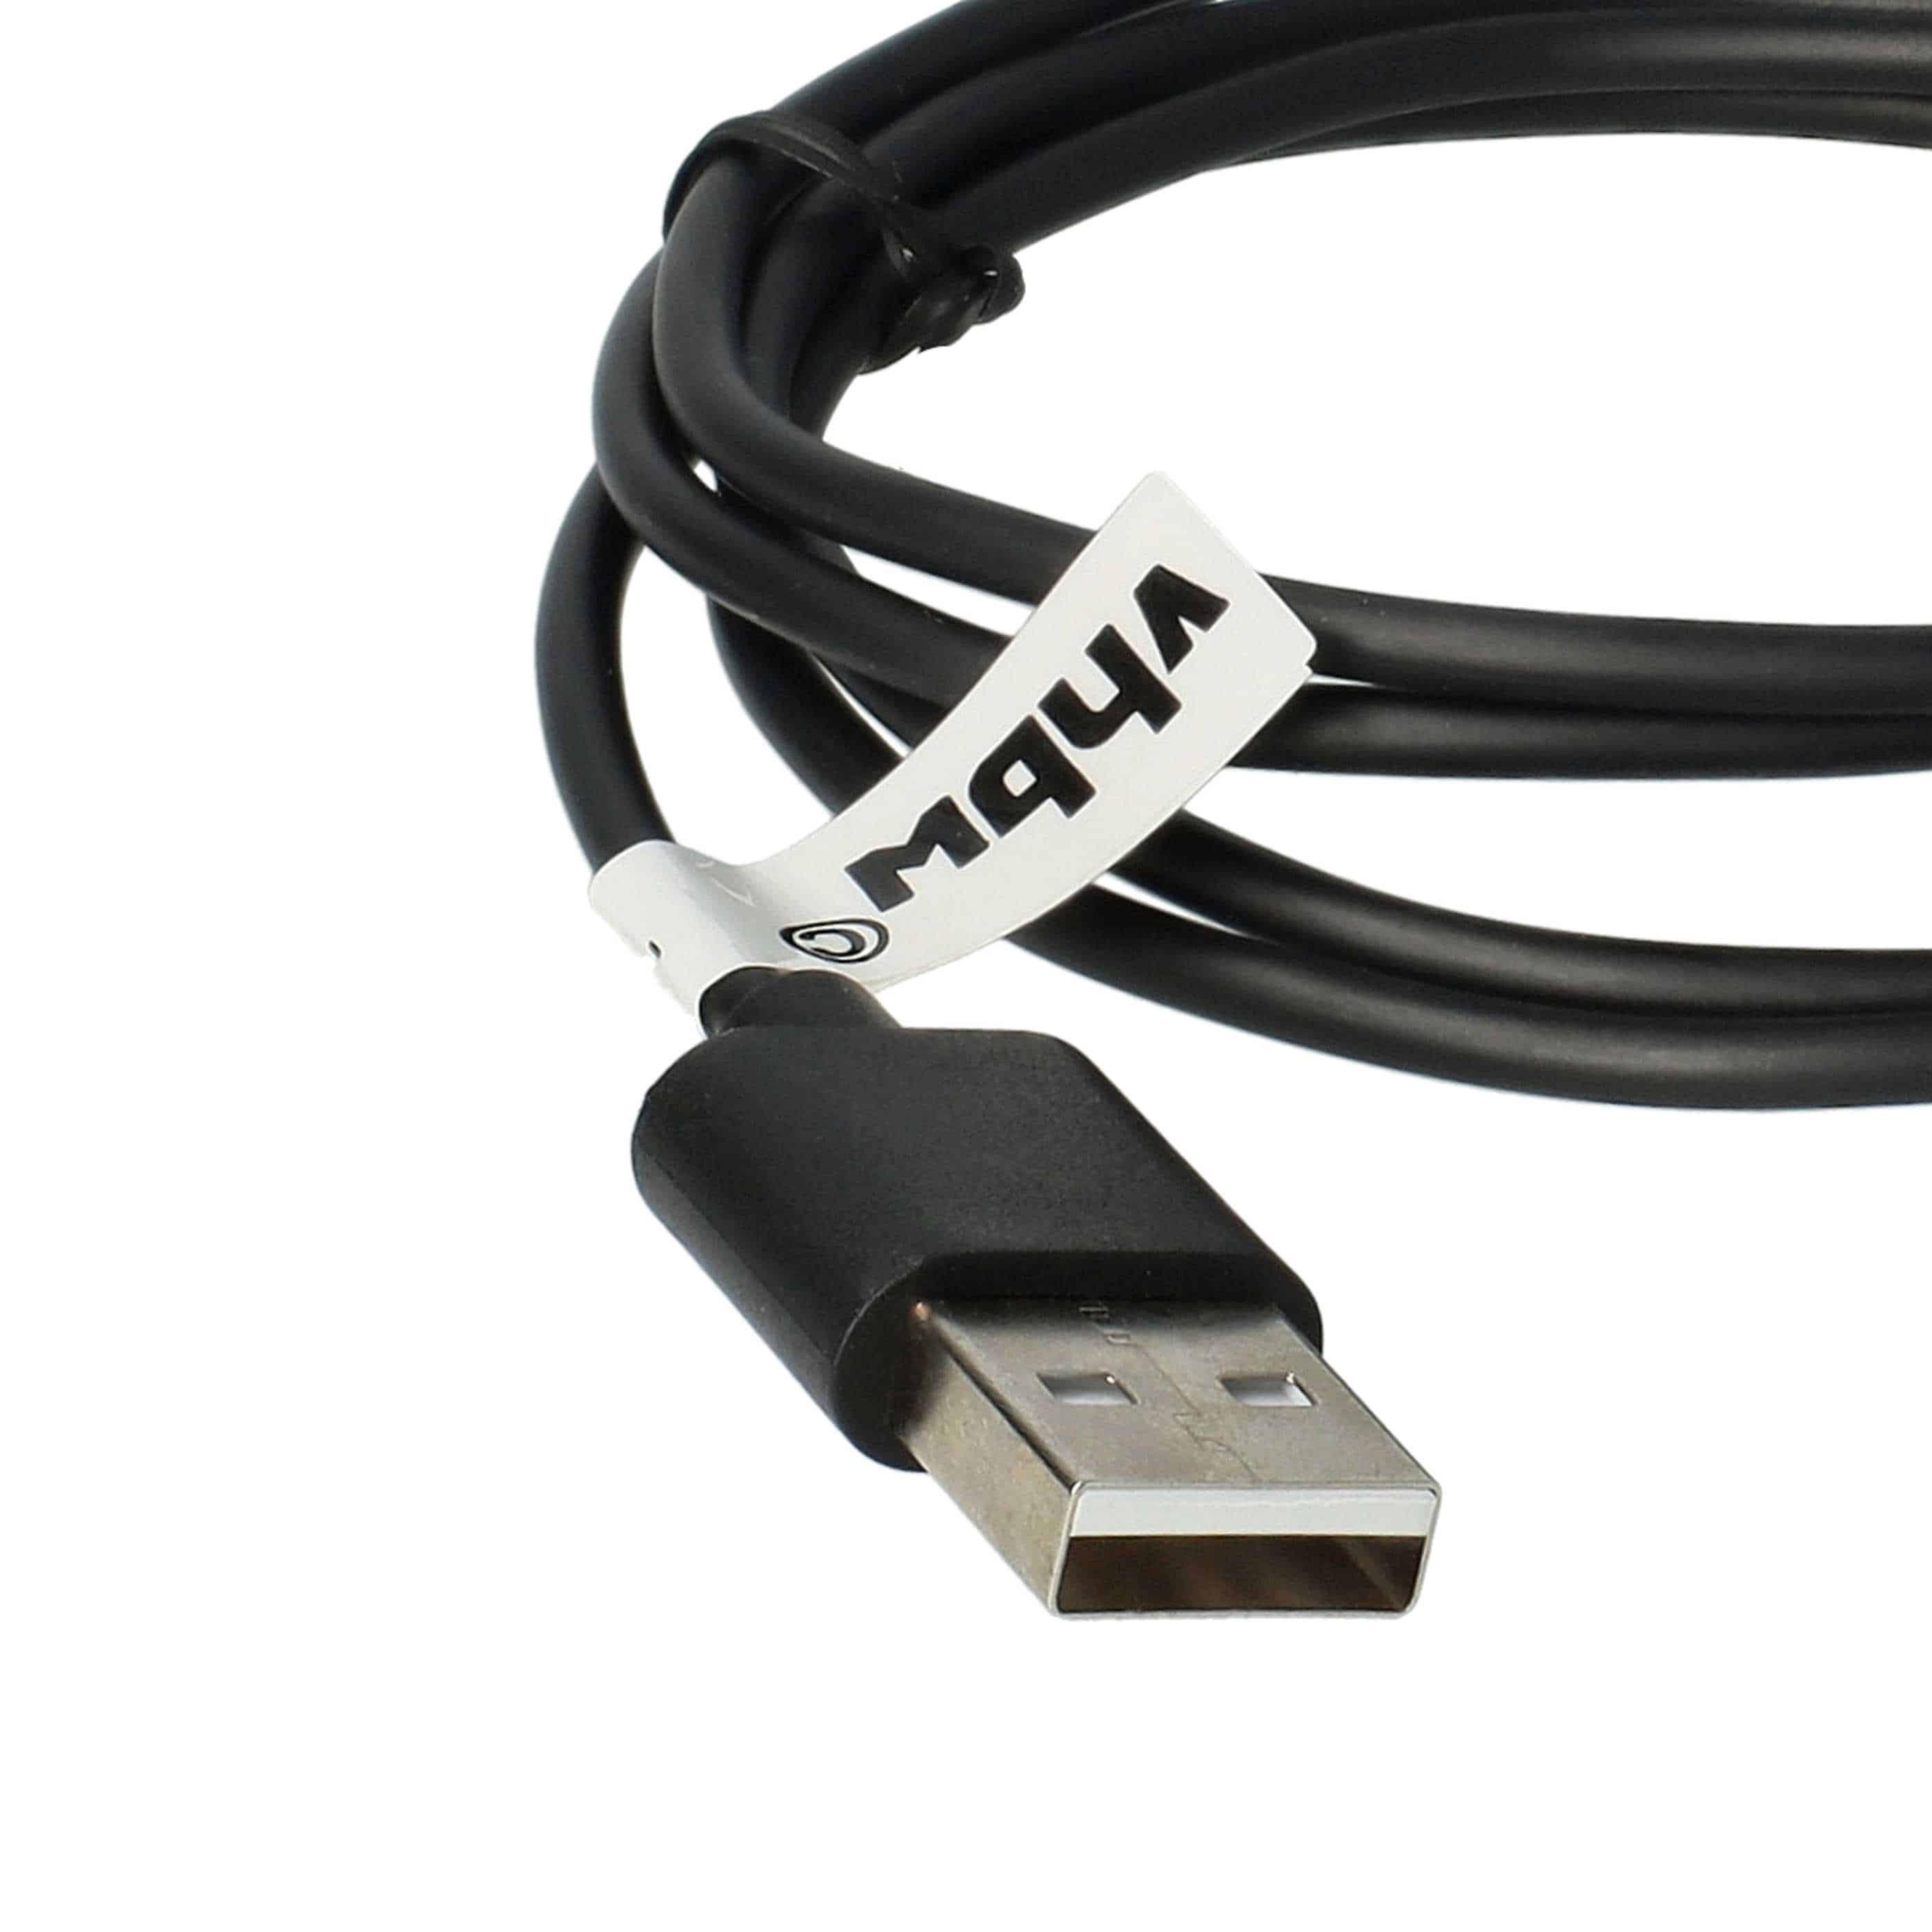 USB Ladekabel als Ersatz für Sony XPZ1-M für Sony Tablet - 100 cm, Magnetisch